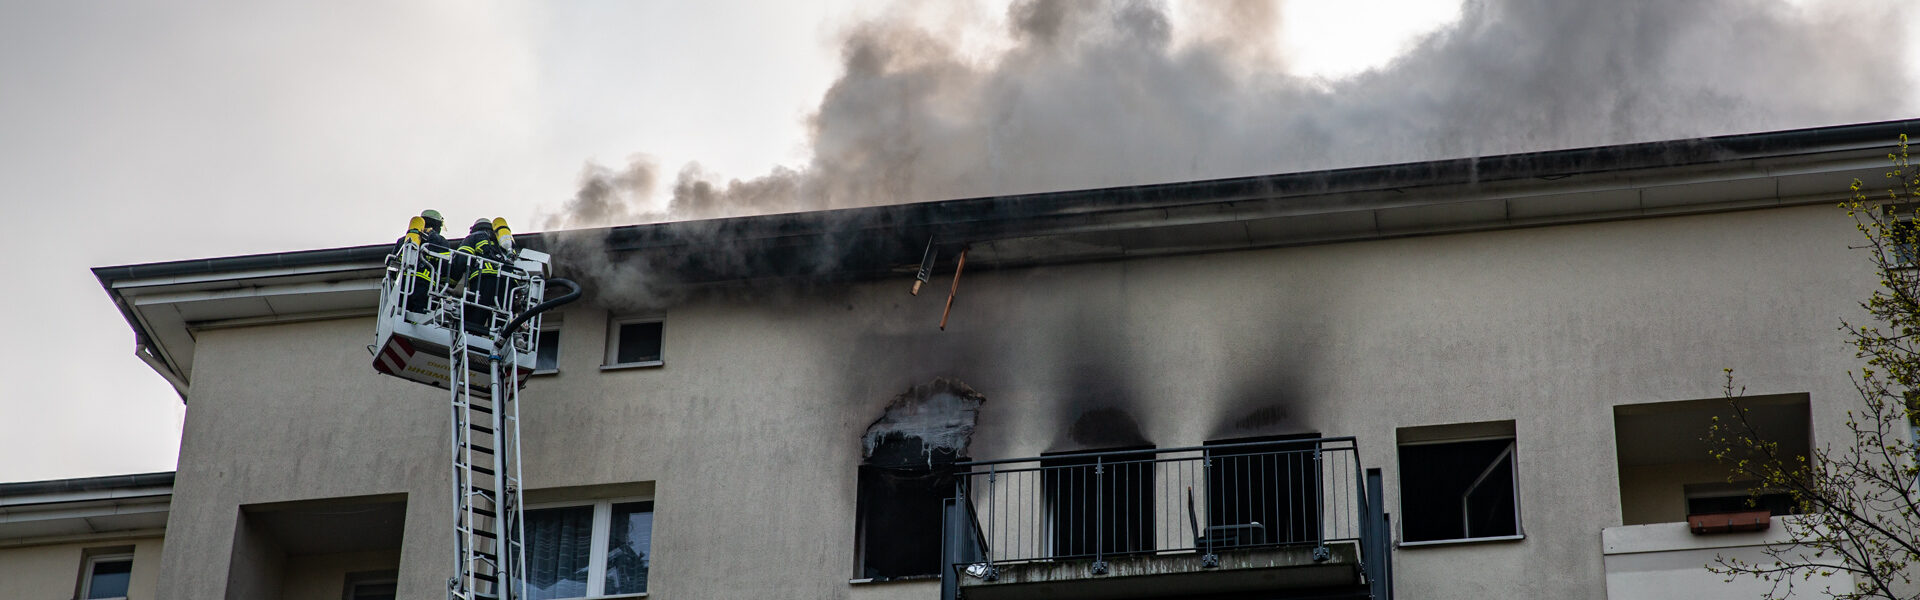 02.05.2021 – Wohnungsbrand greift auf Dachstuhl über